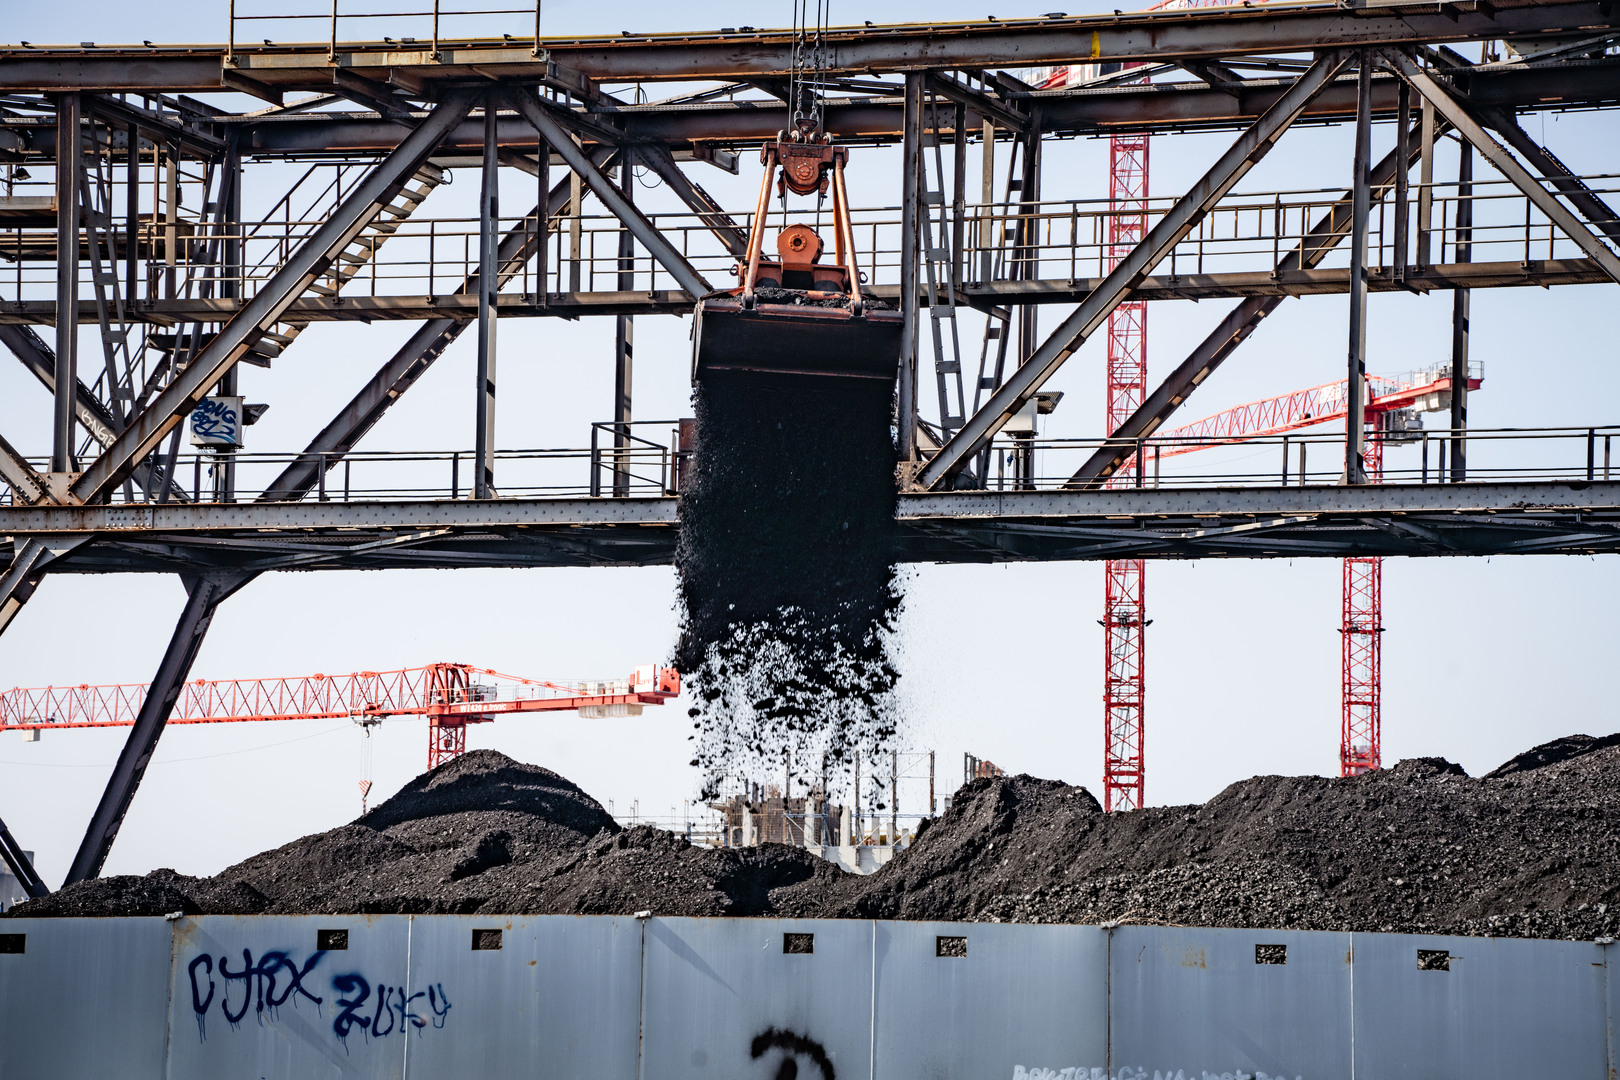 ردا على عقوبات أوروبية على الفحم الروسي.. بيسكوف: سنوجه إمدادات الفحم إلى أسواق بديلة